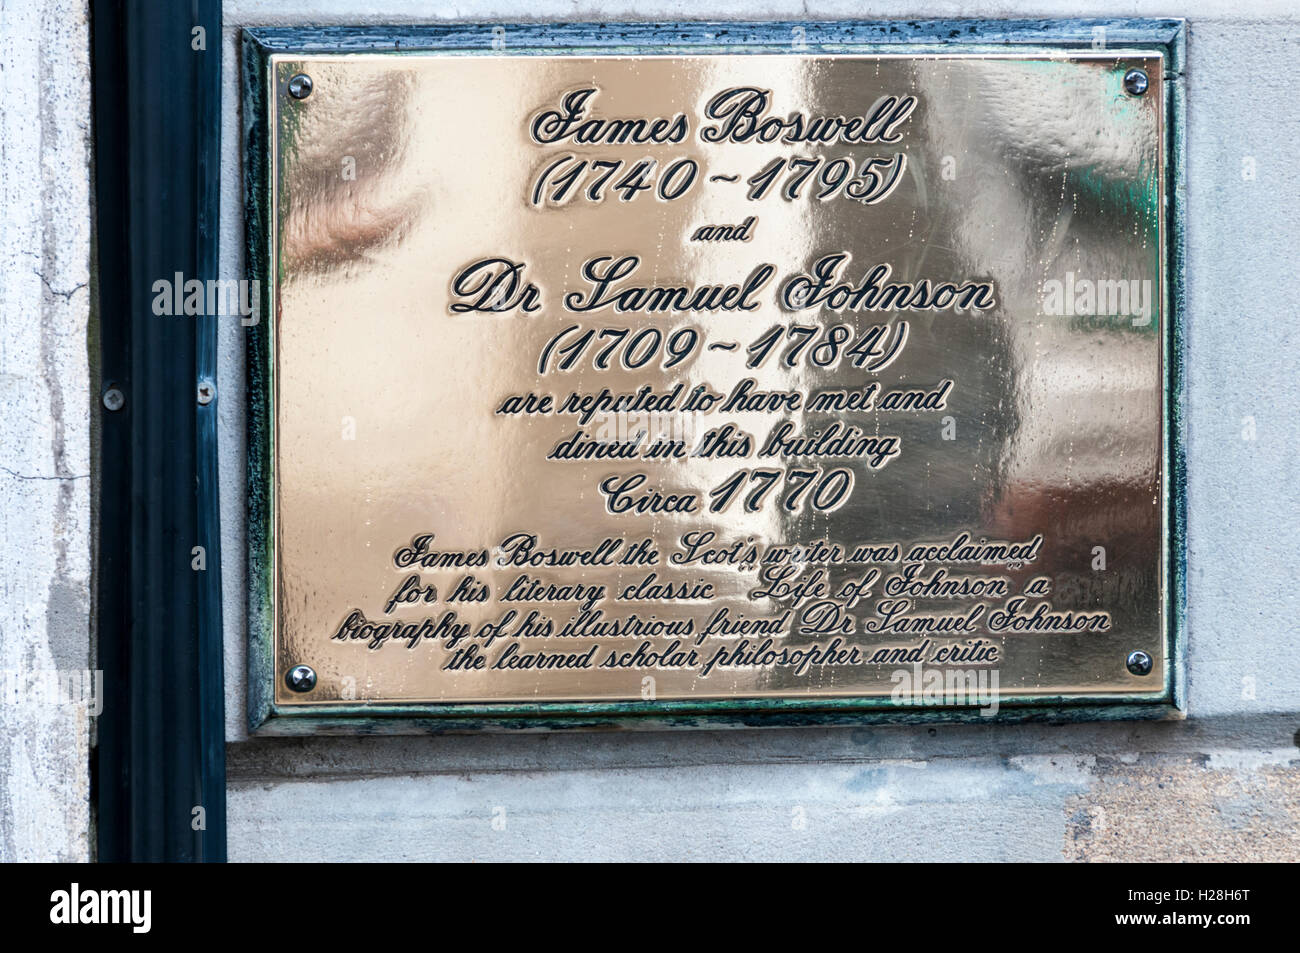 Una placa de bronce en Boswell's Court en la Royal Mile de Edimburgo registra una reunión entre James Boswell y el Dr. Samuel Johnson. Foto de stock